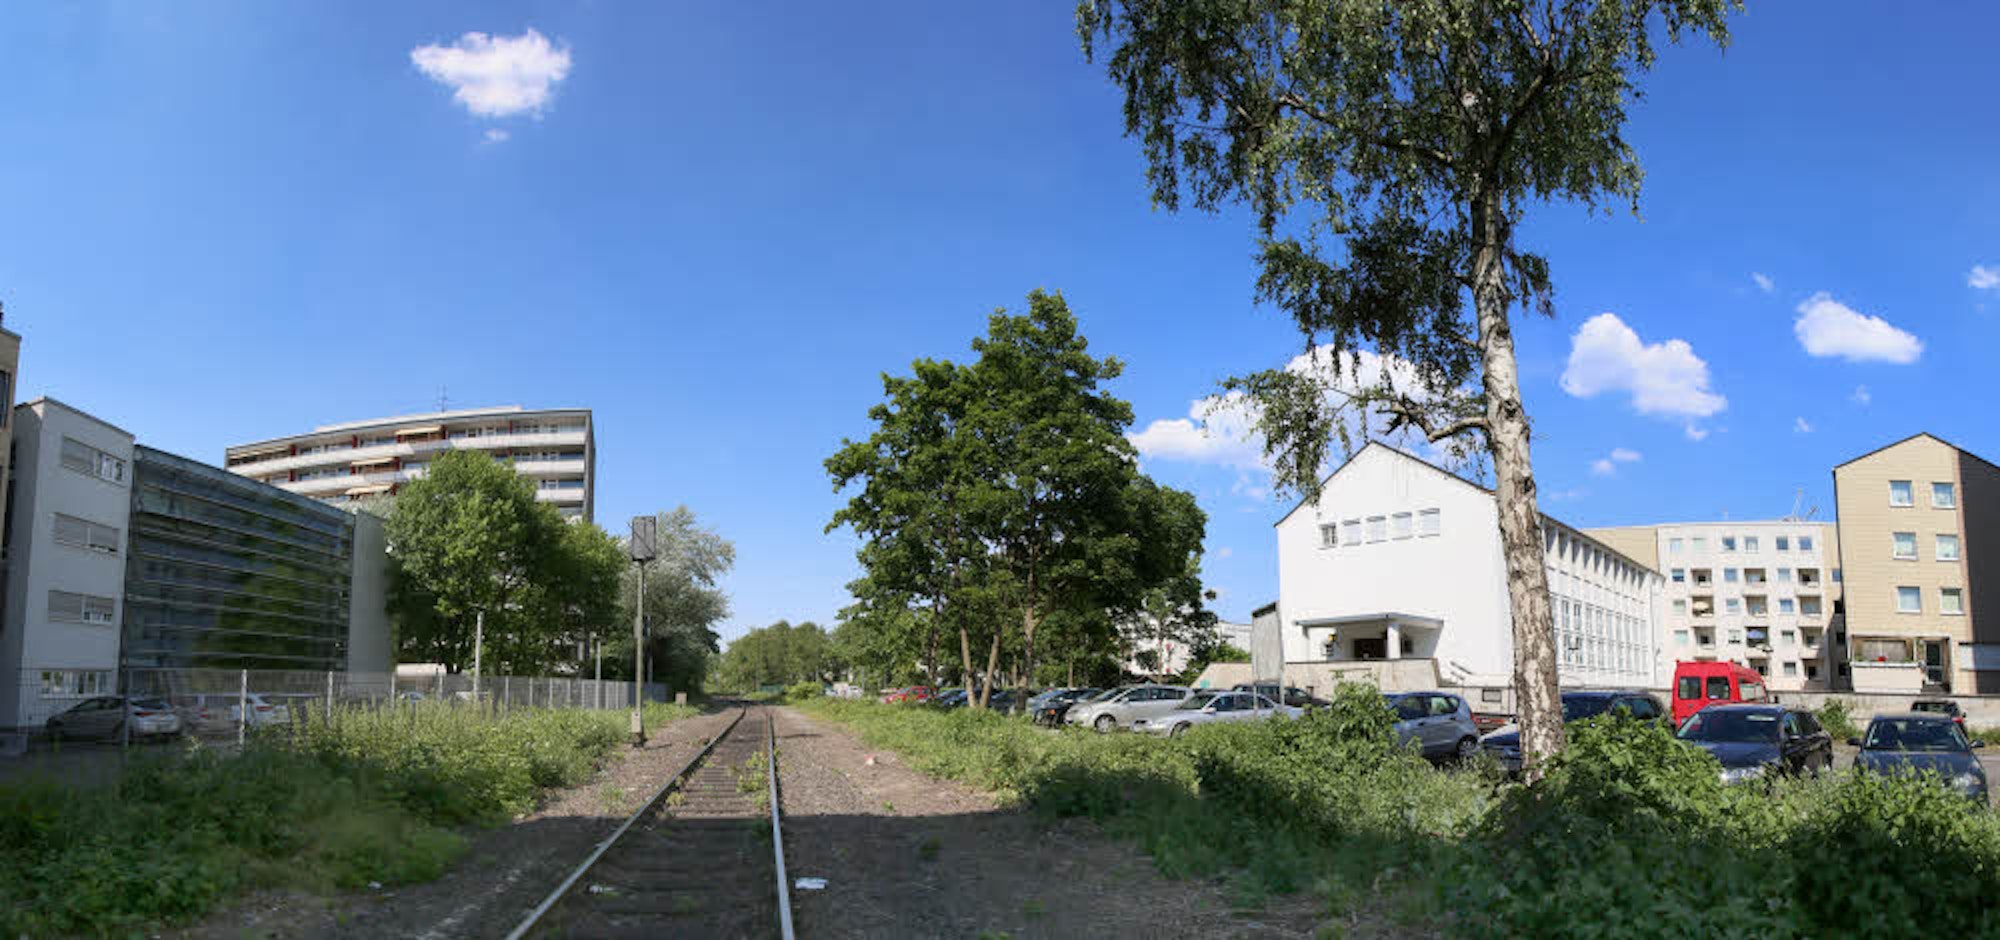 Über den Gleisen neben dem Braunsfelder Markt werden Wohngebäude errichtet.